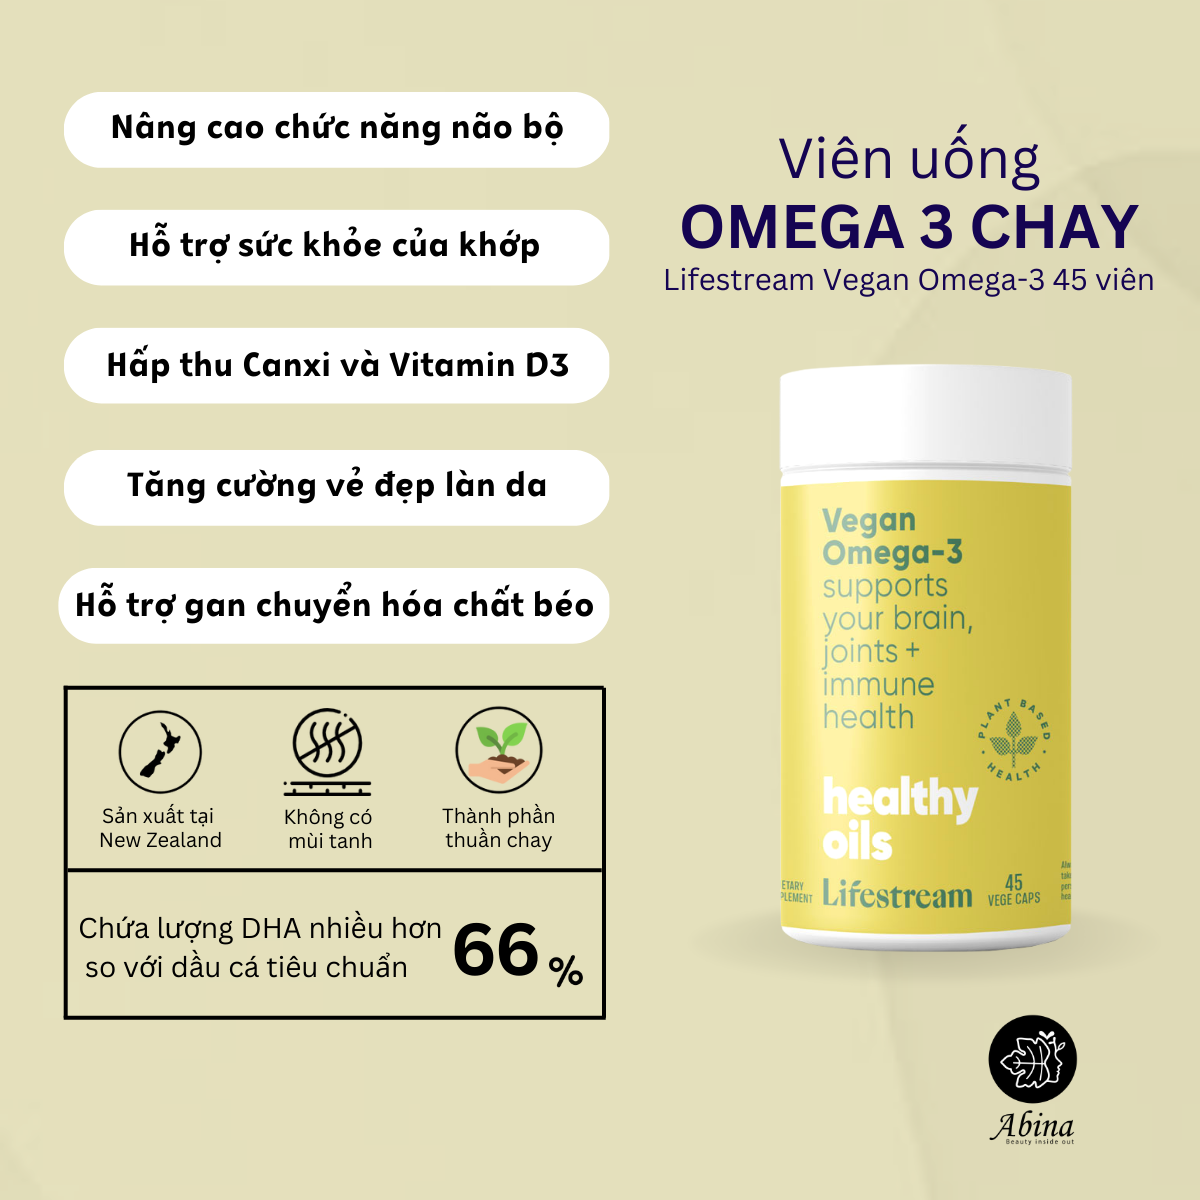 Điểm nổi bật Omega 3 chay Lifestream Omega 3 vegan